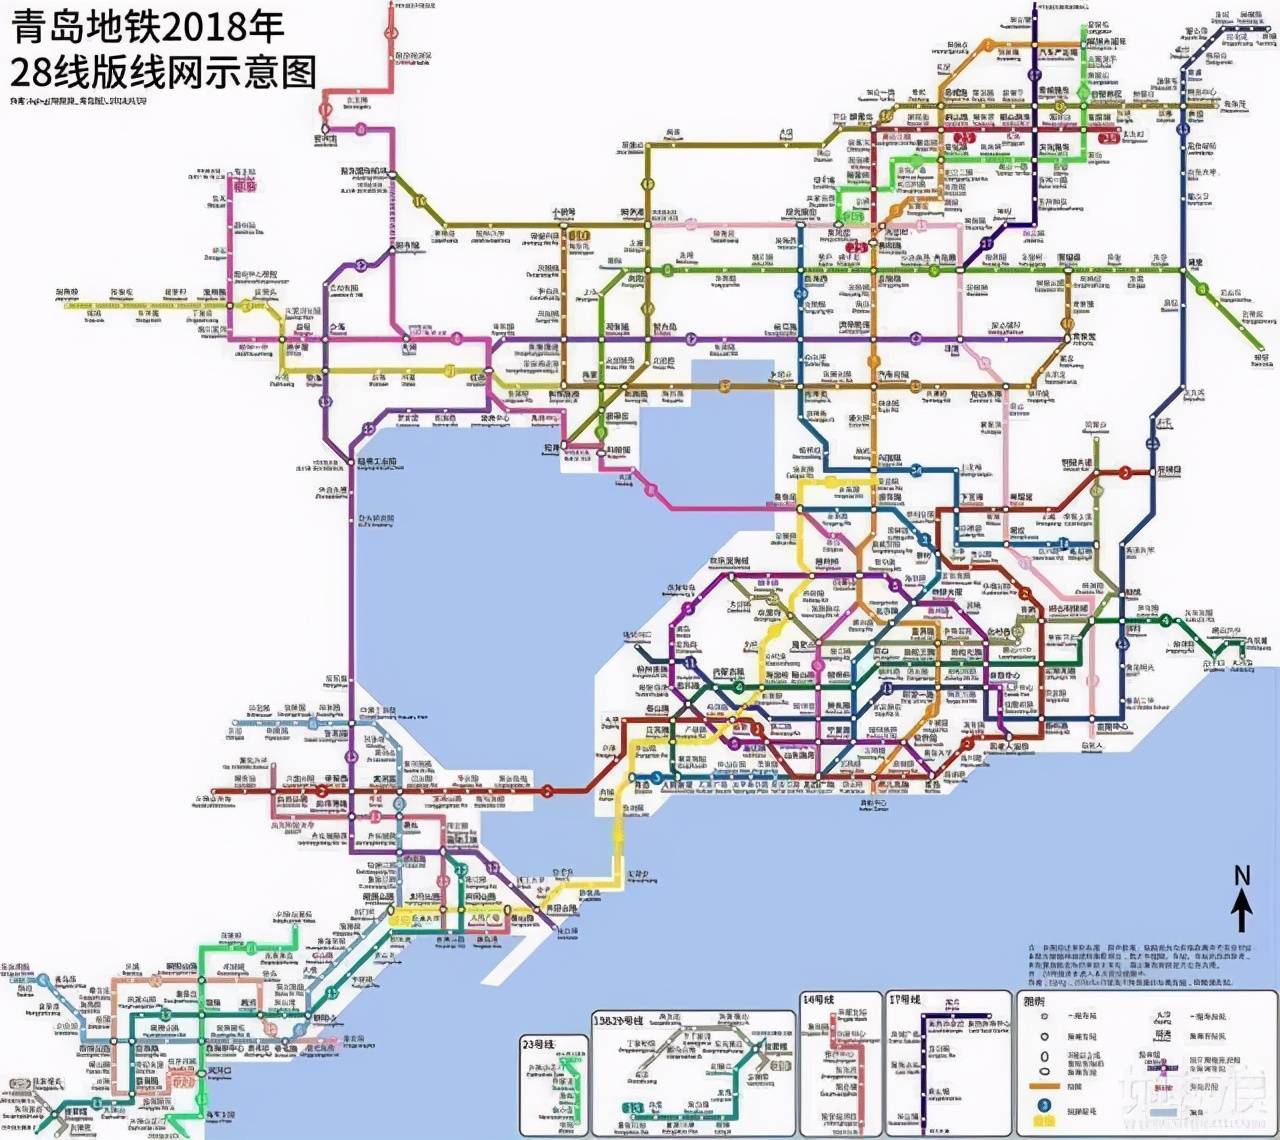 原创青岛正在建新地铁:东西走向沿途设25站,贯穿整个城市直达沙子口